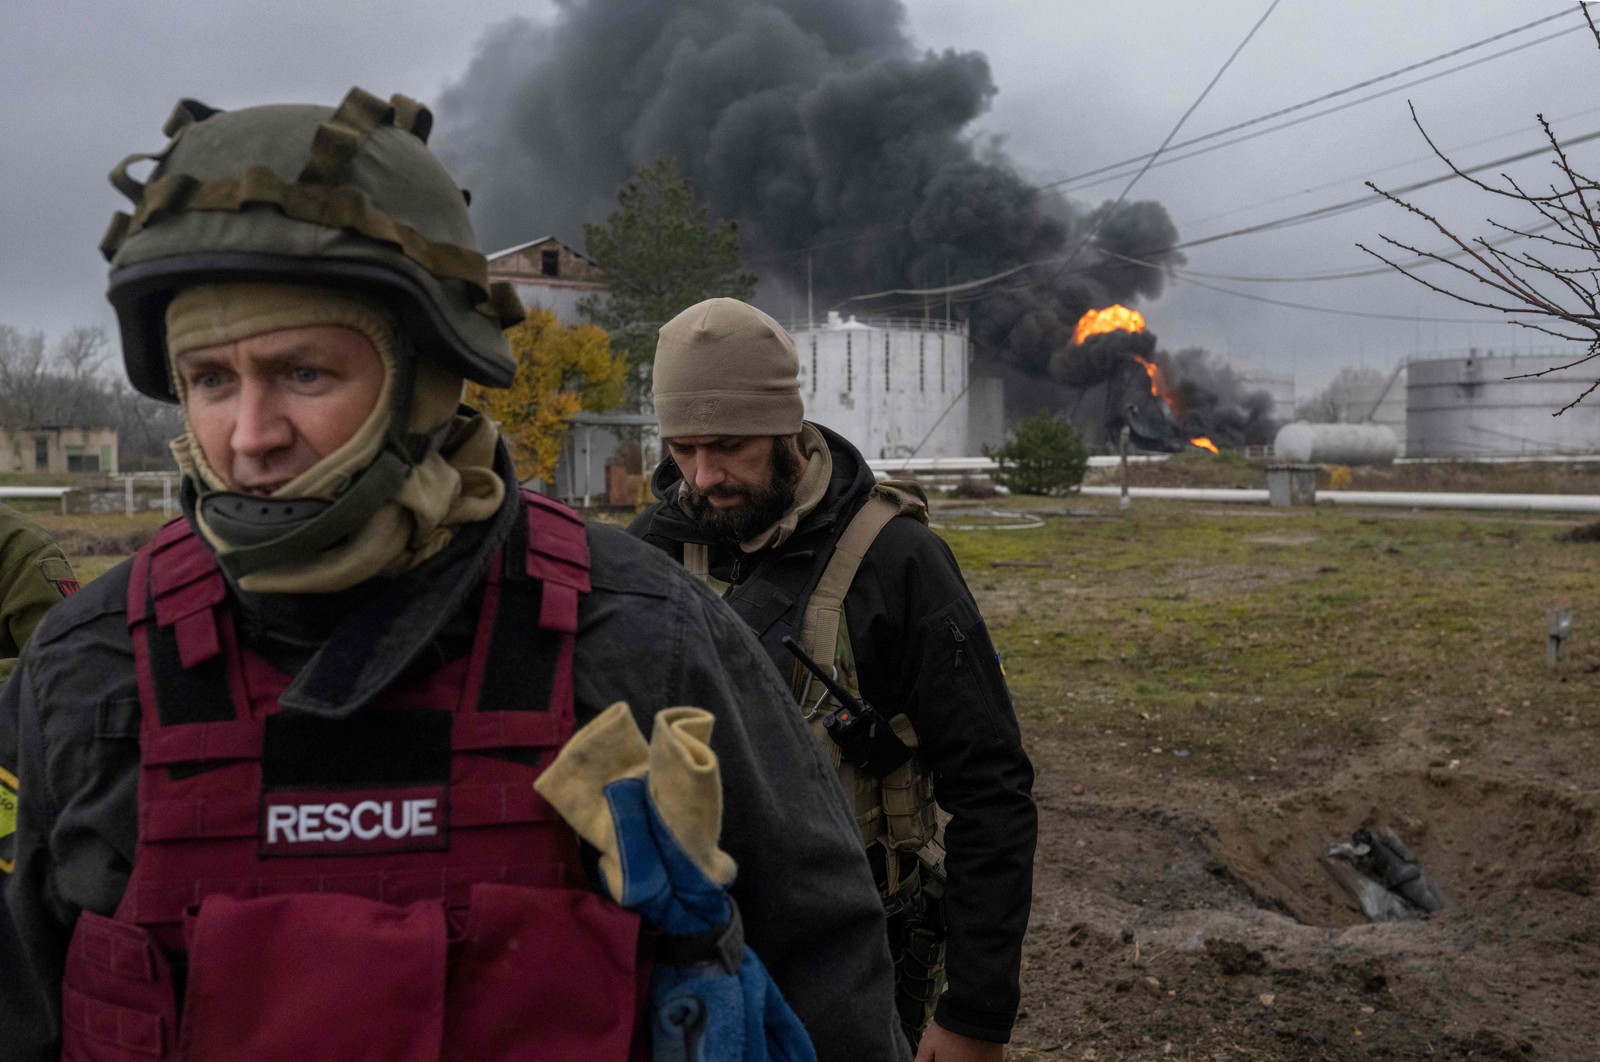 Soldados inspecionam área enquanto a fumaça negra sobe de uma reserva de petróleo em Kherson — Foto: BULENT KILIC/AFP